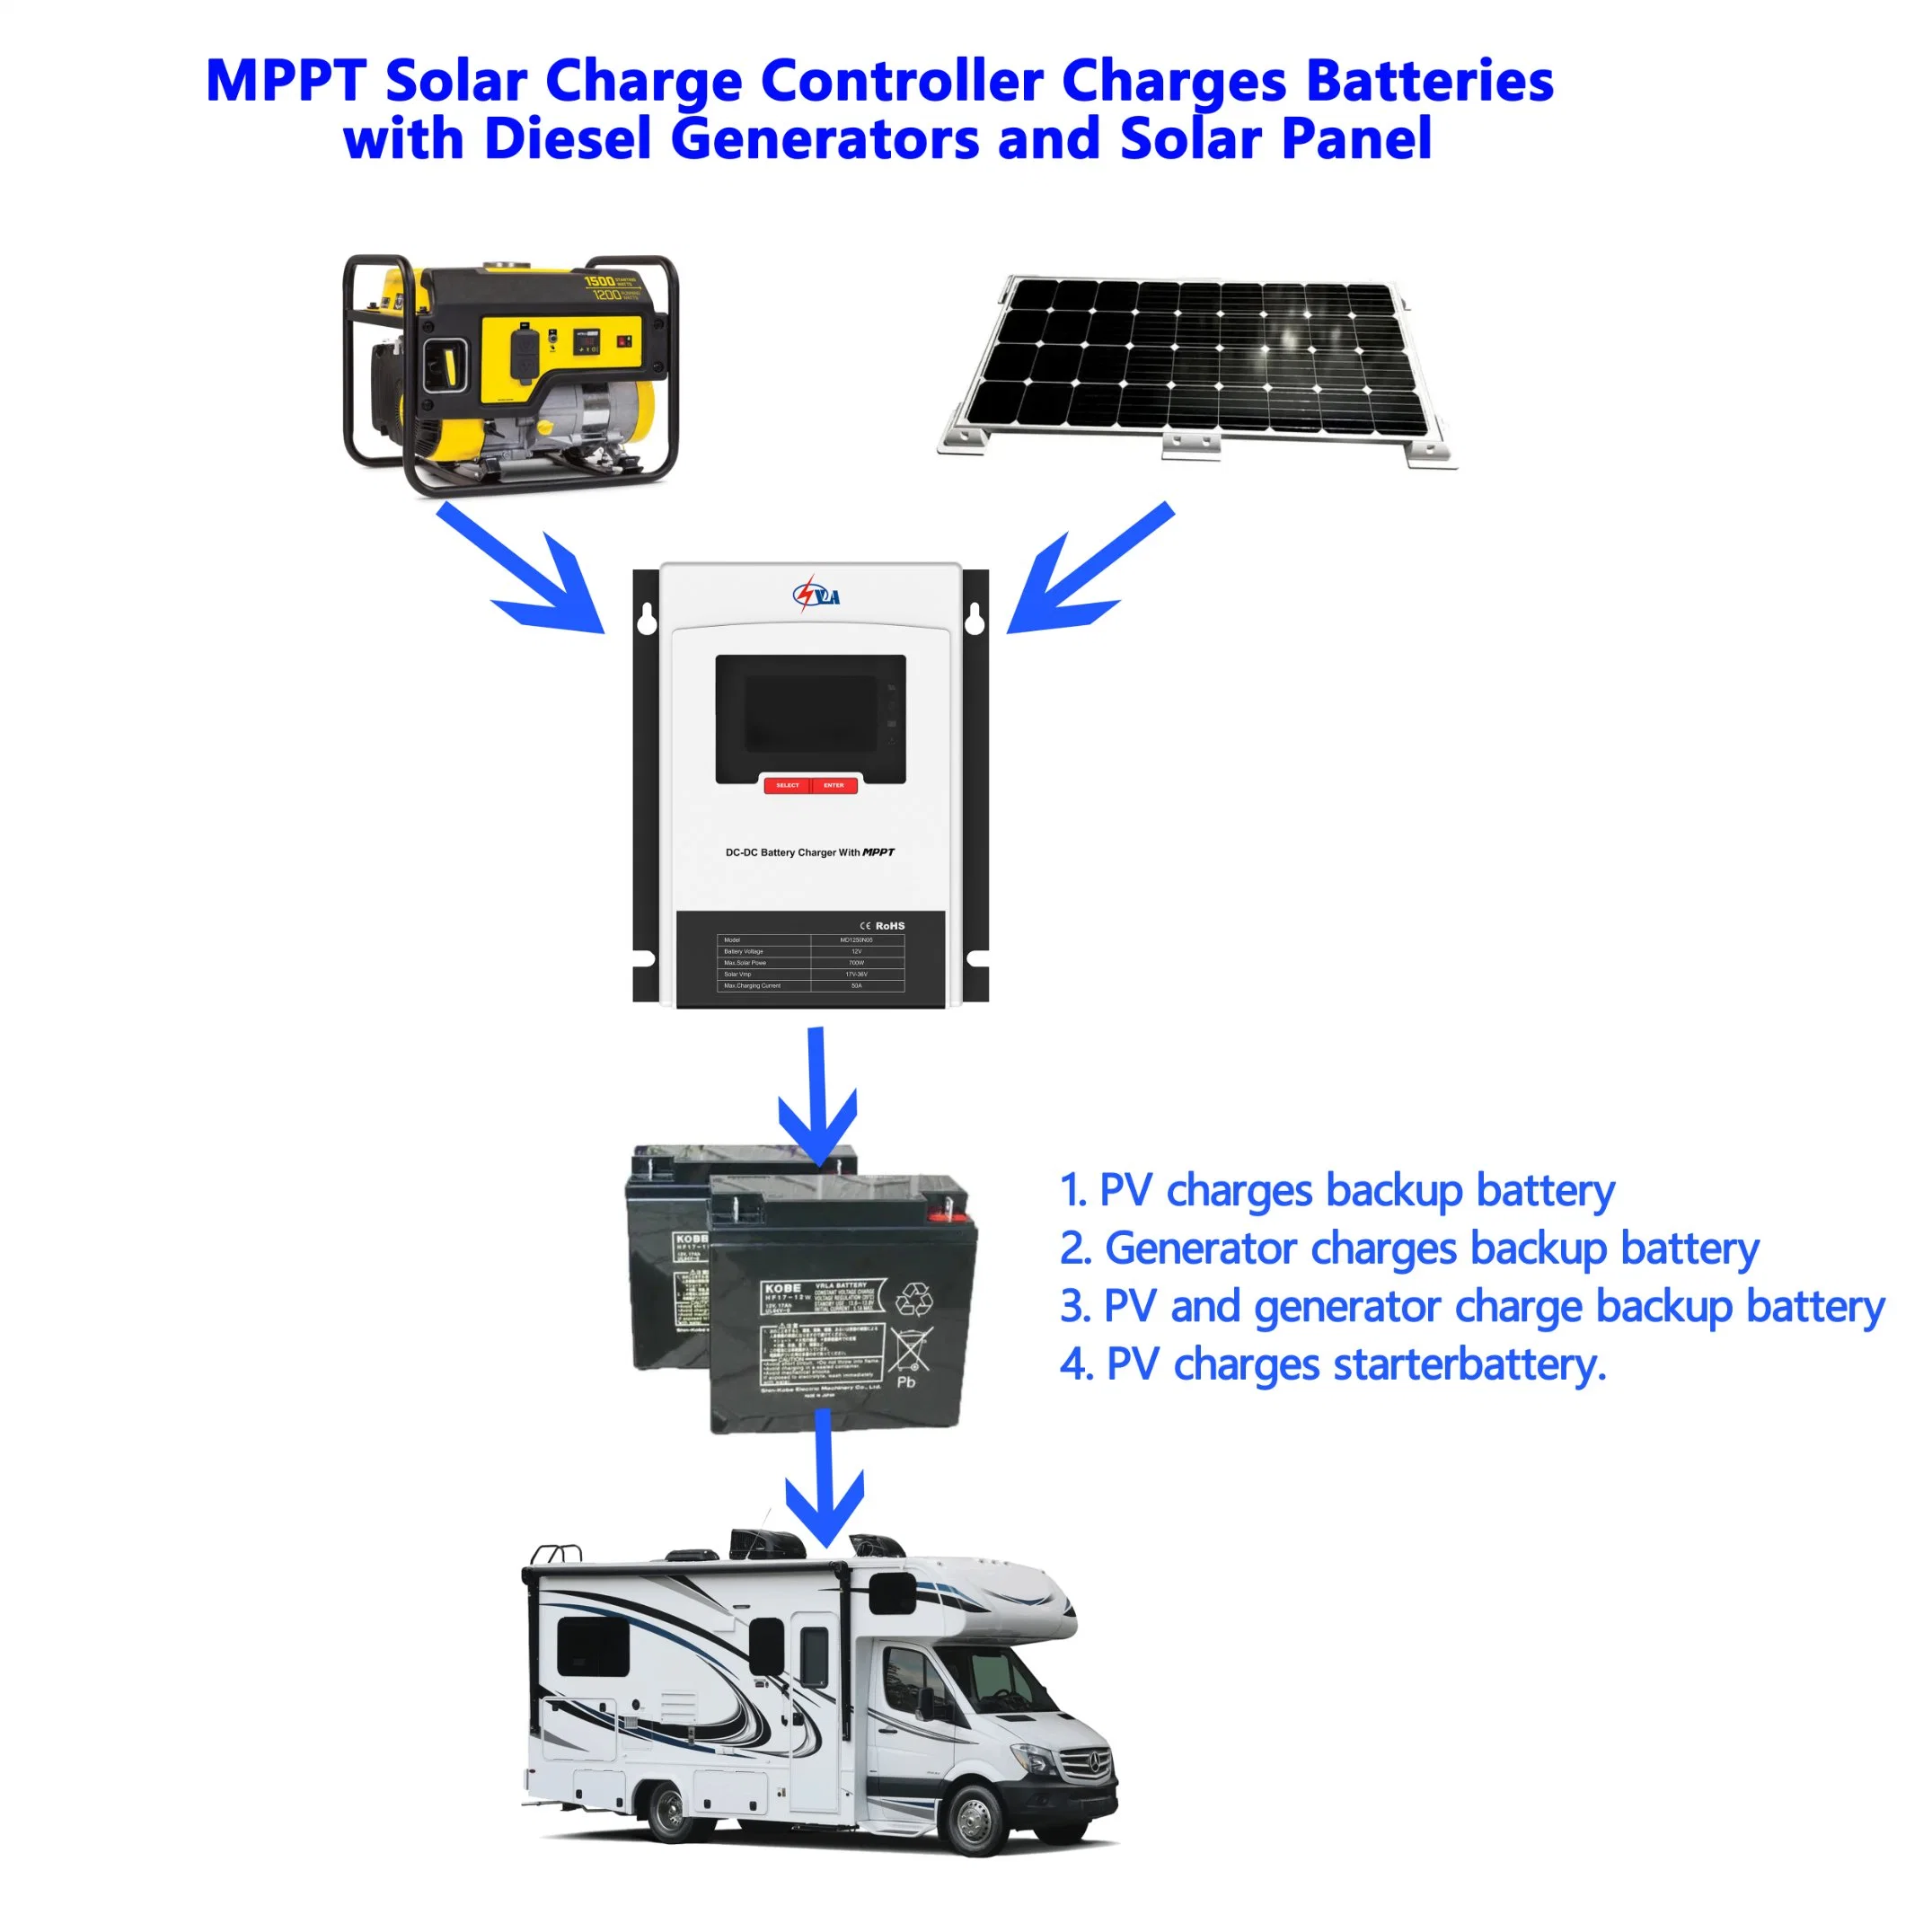 Controlador de carga solar MPPT Conectar el generador de CC y un panel solar a la misma batería en el mismo tiempo de carga de múltiples fuentes Nova